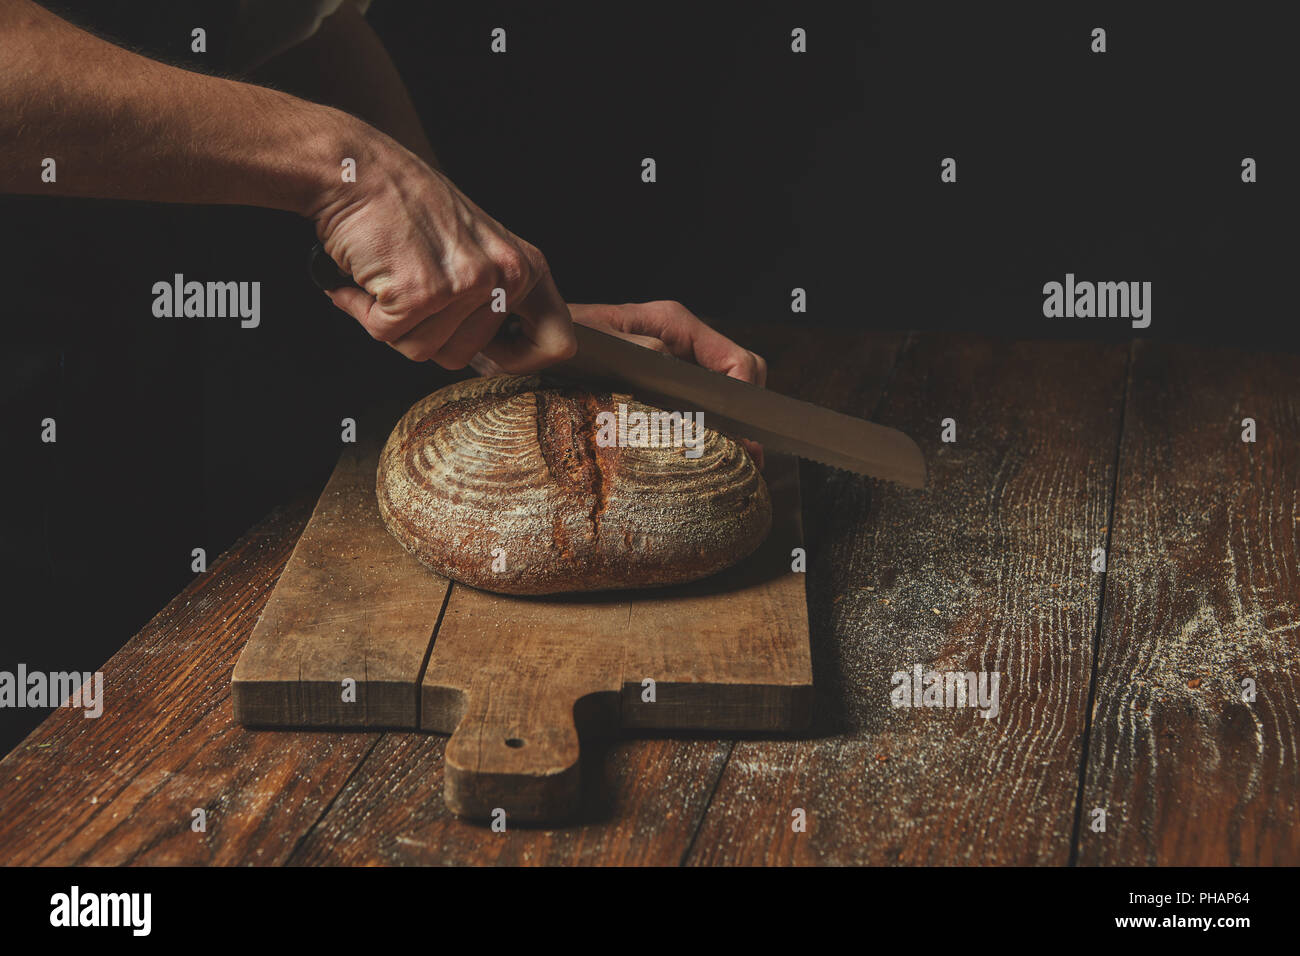 Men's hands cut bread Stock Photo